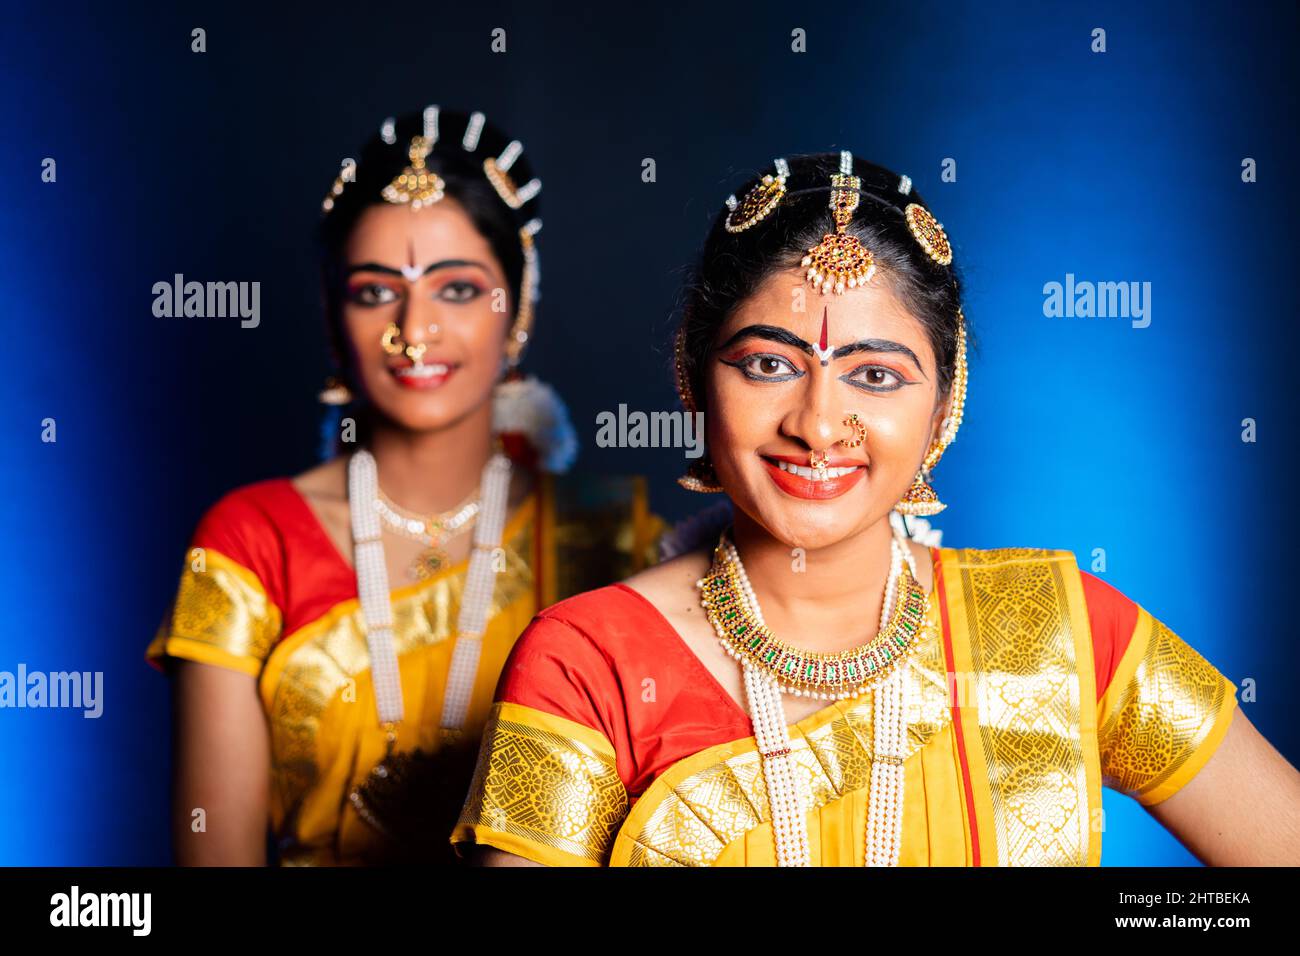 Représentation sur scène des danseurs de Bharatnatyam souriants - concept de danseurs de classe indienne, de divertissement et de culture traditionnelle. Banque D'Images